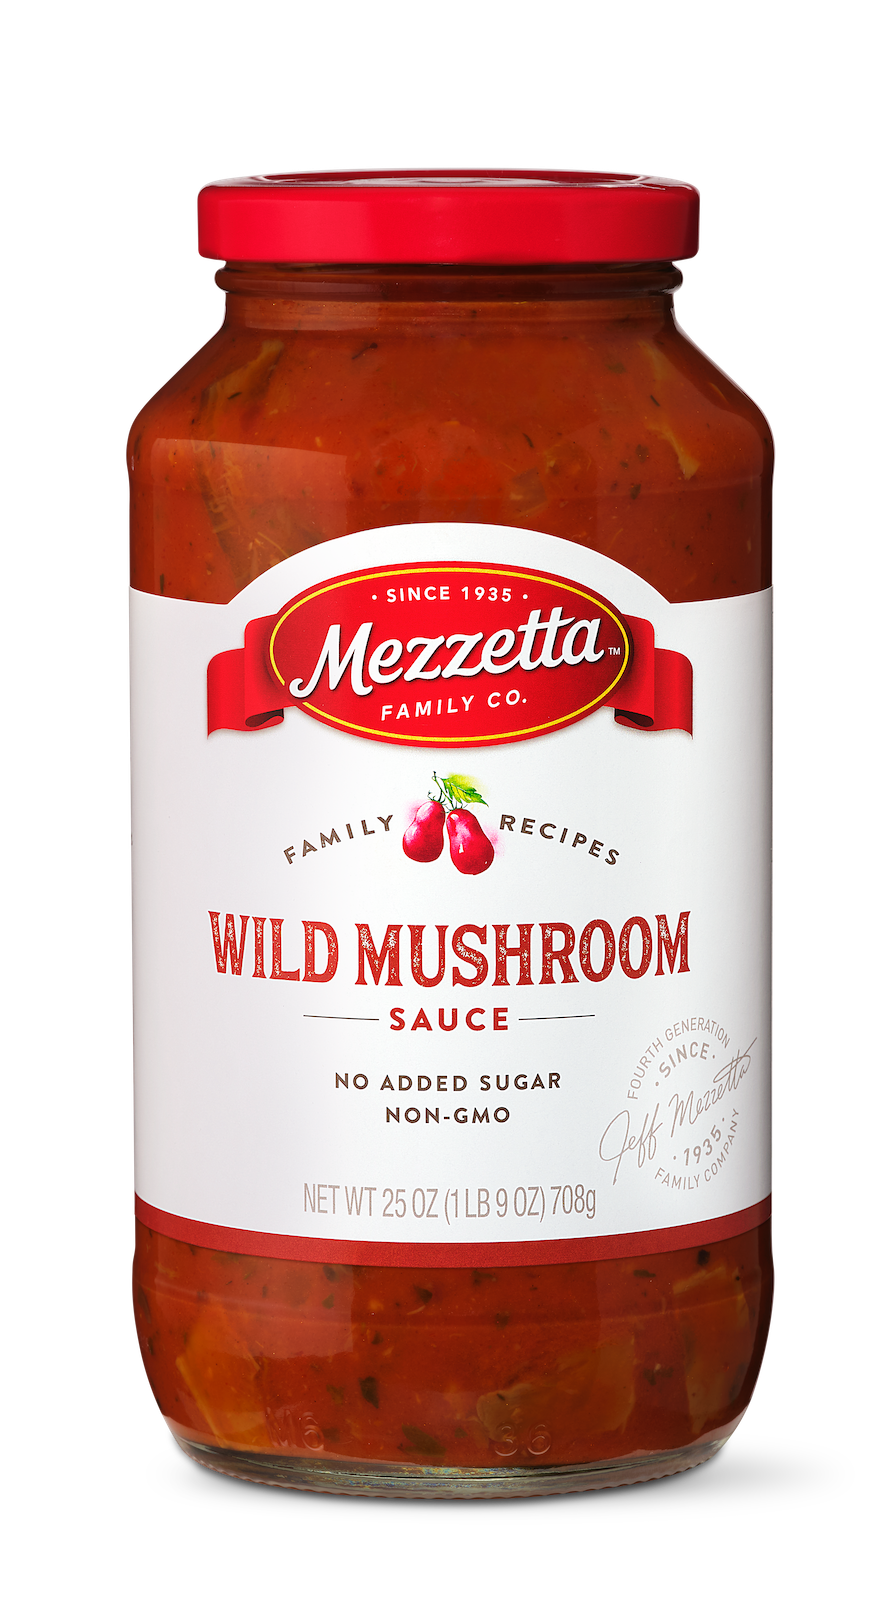 Family Recipes Wild Mushroom Sauce